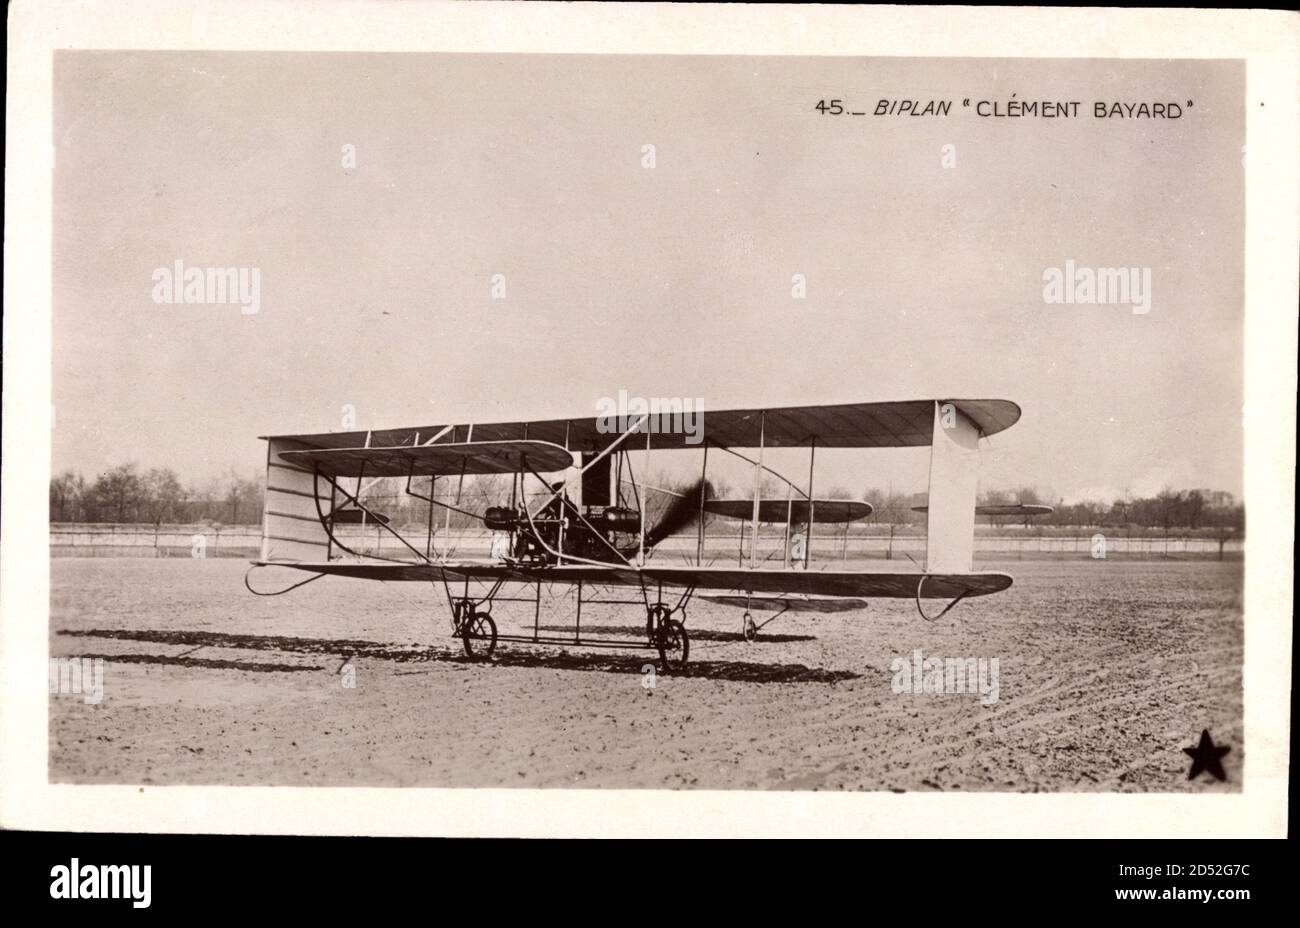 Biplan Clément Bayard, Flugzeug, Aéroplane, Landefeld | utilizzo in tutto il mondo Foto Stock